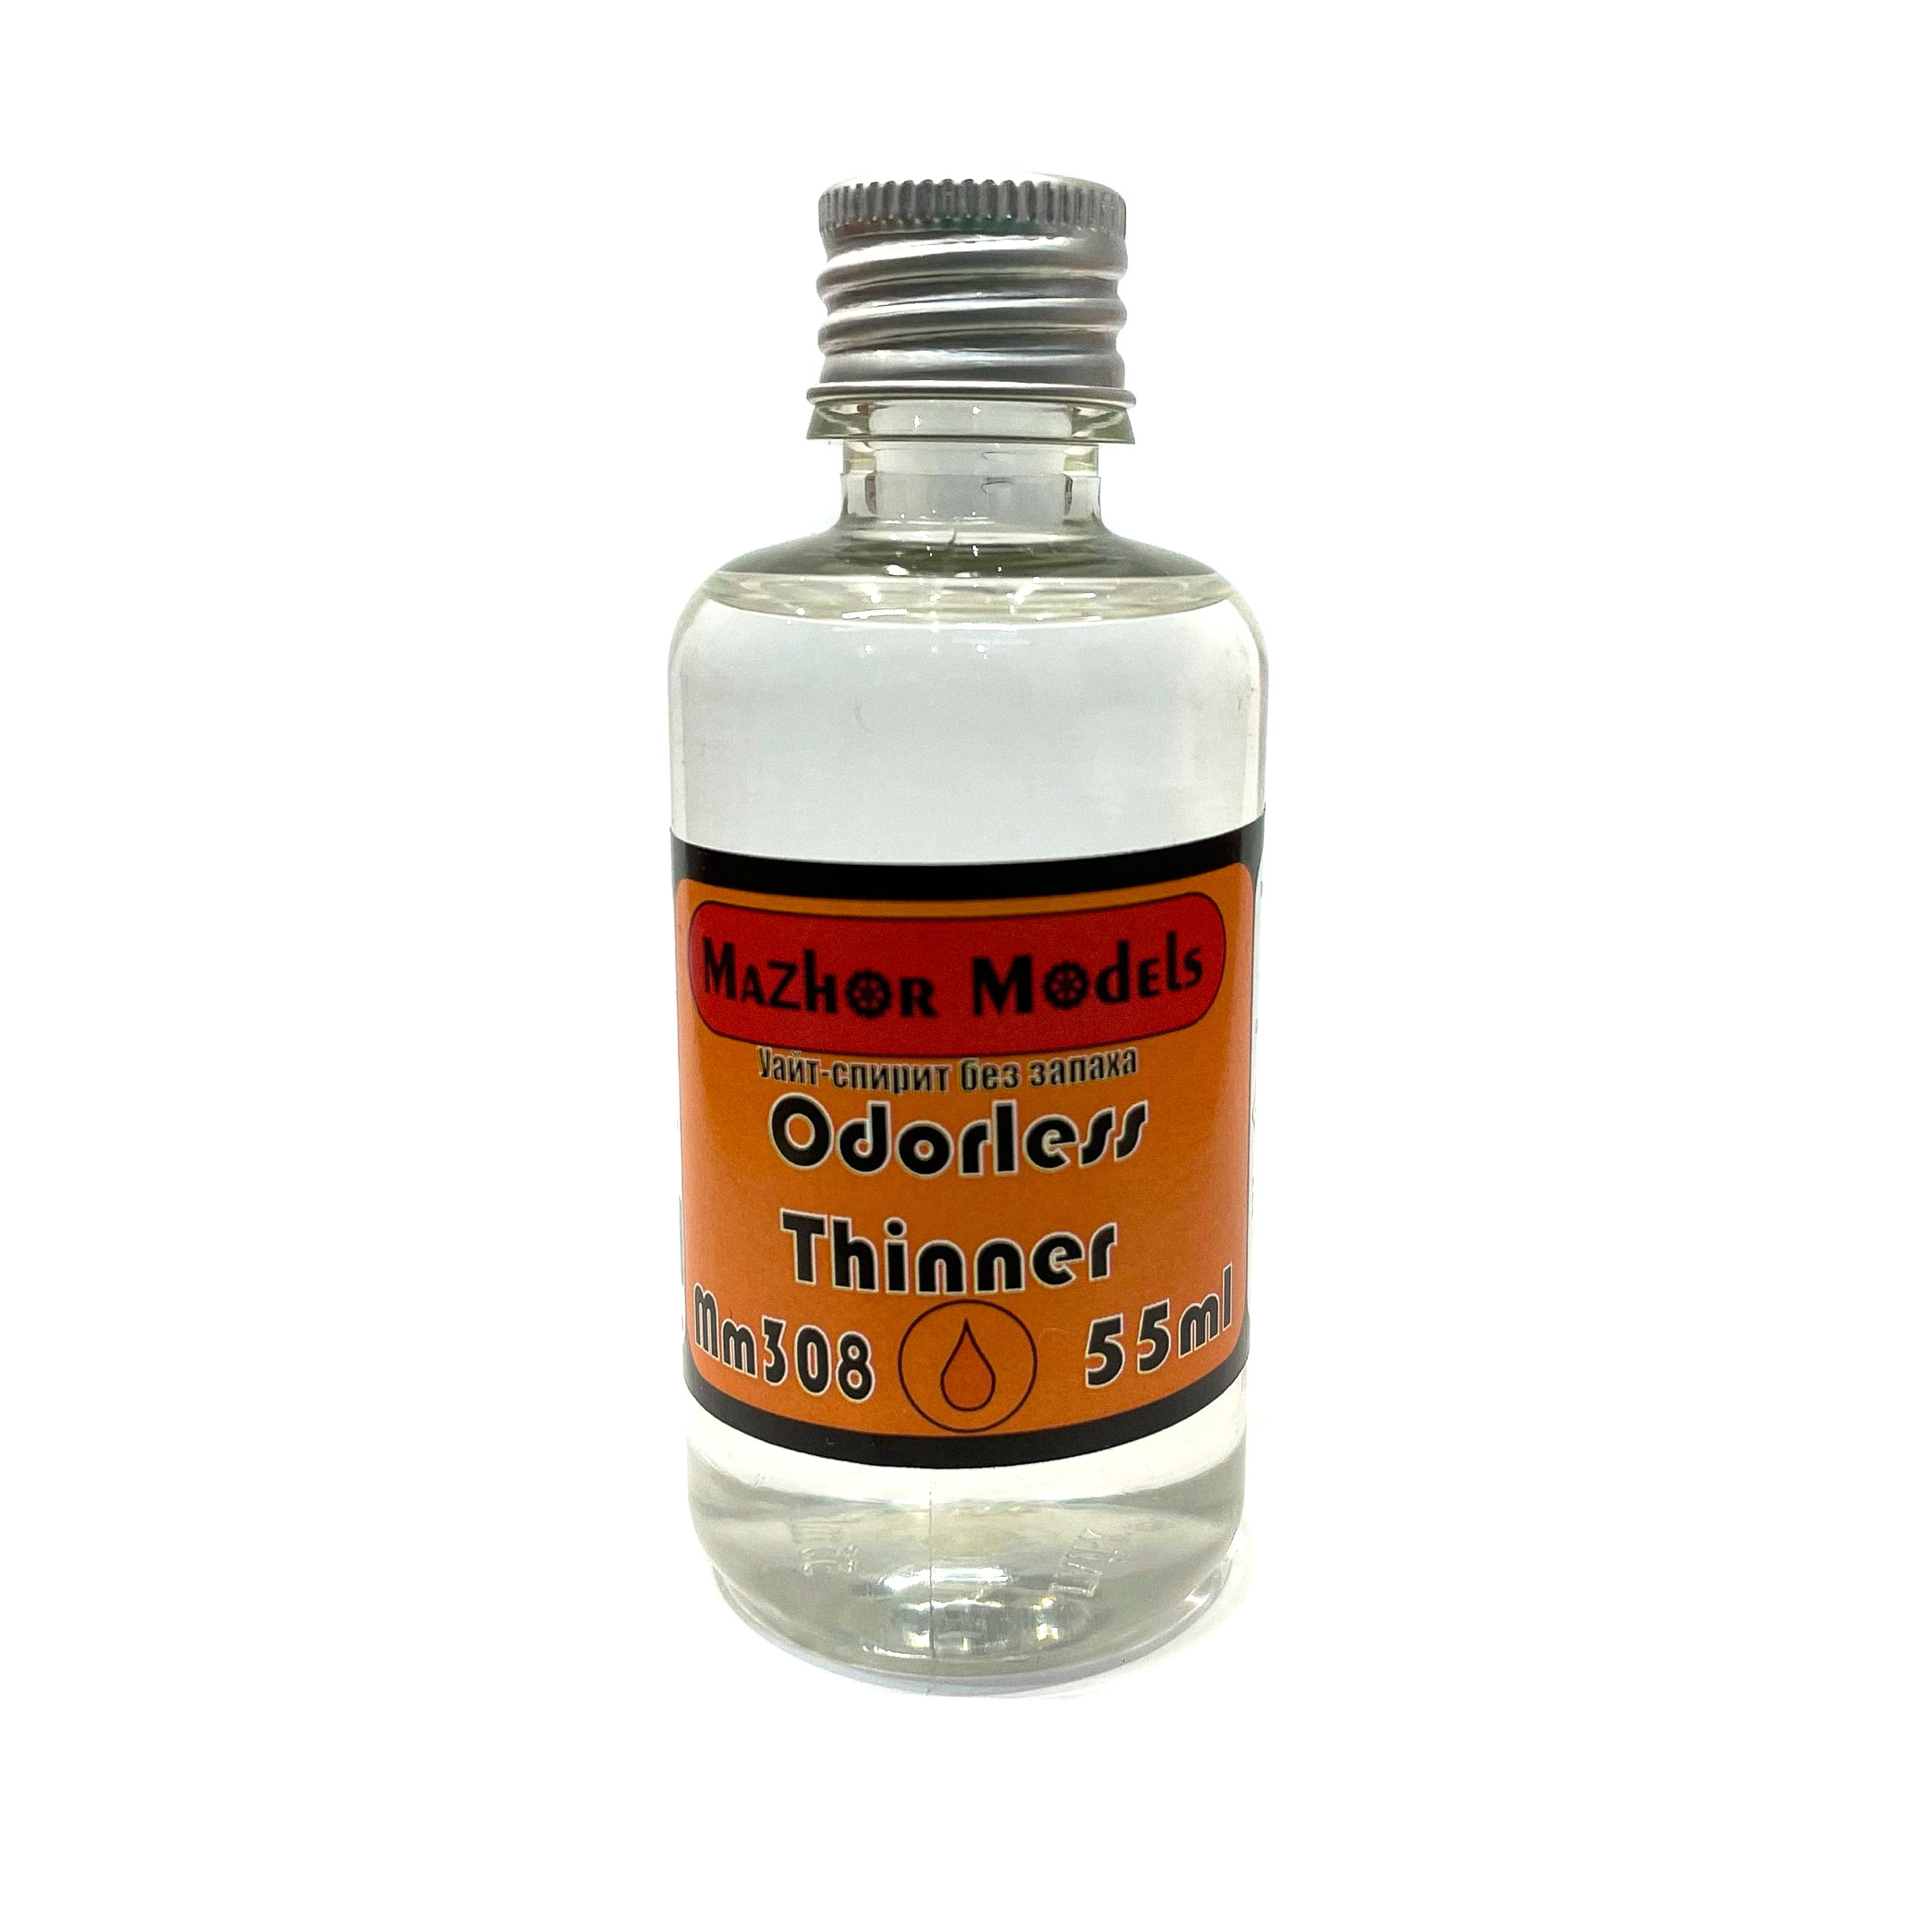 MM308 Major Models White Spirit Odorless, 55 ml